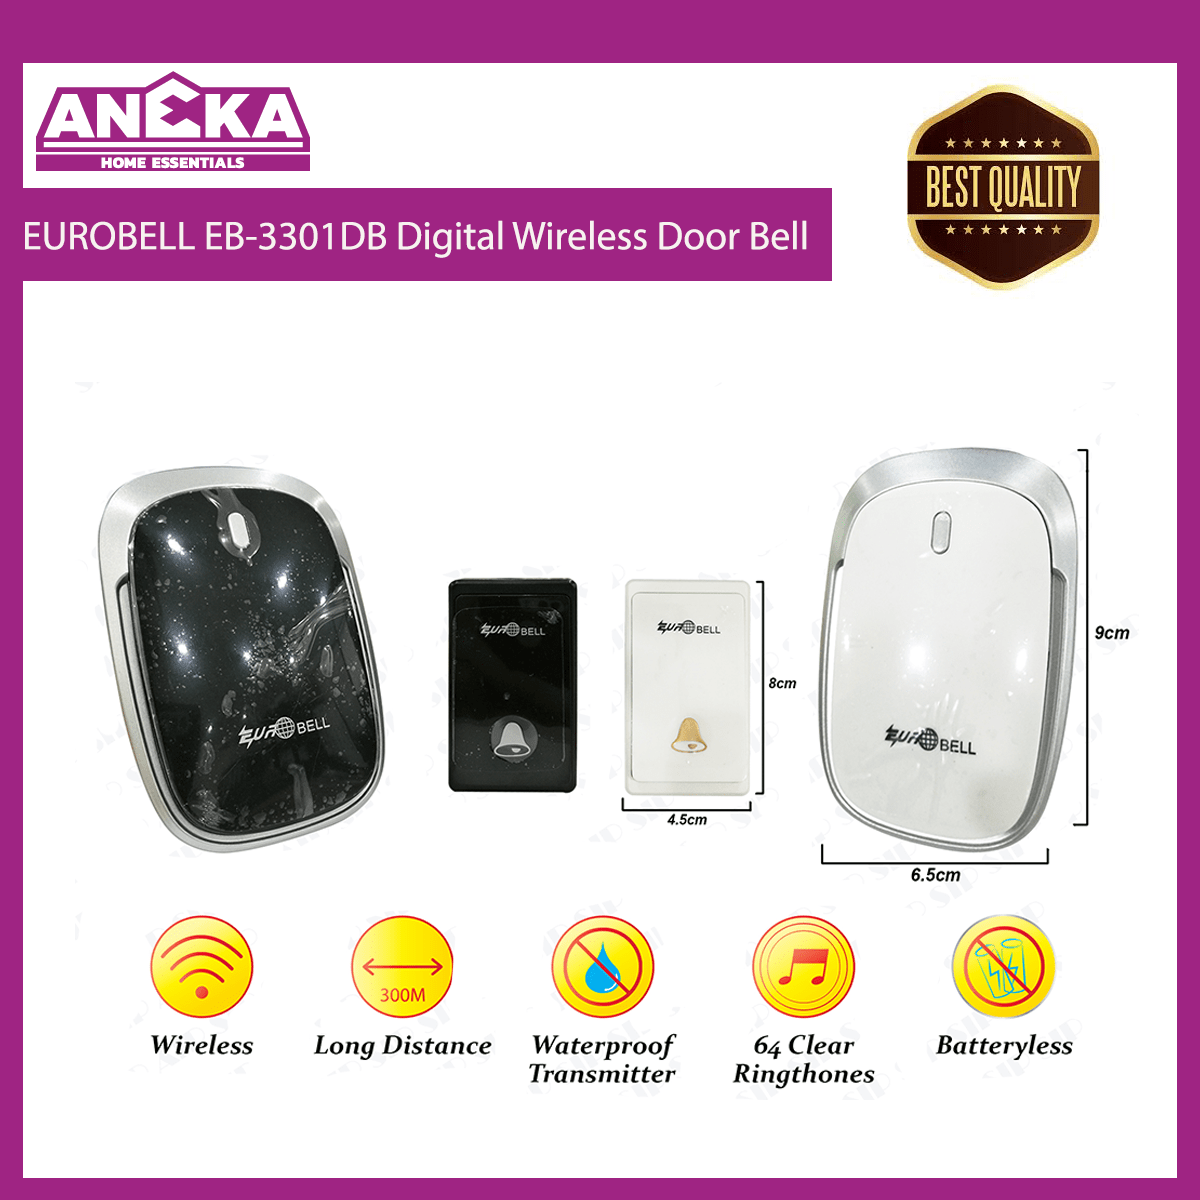 EUROBELL Digital Wireless Door Bell